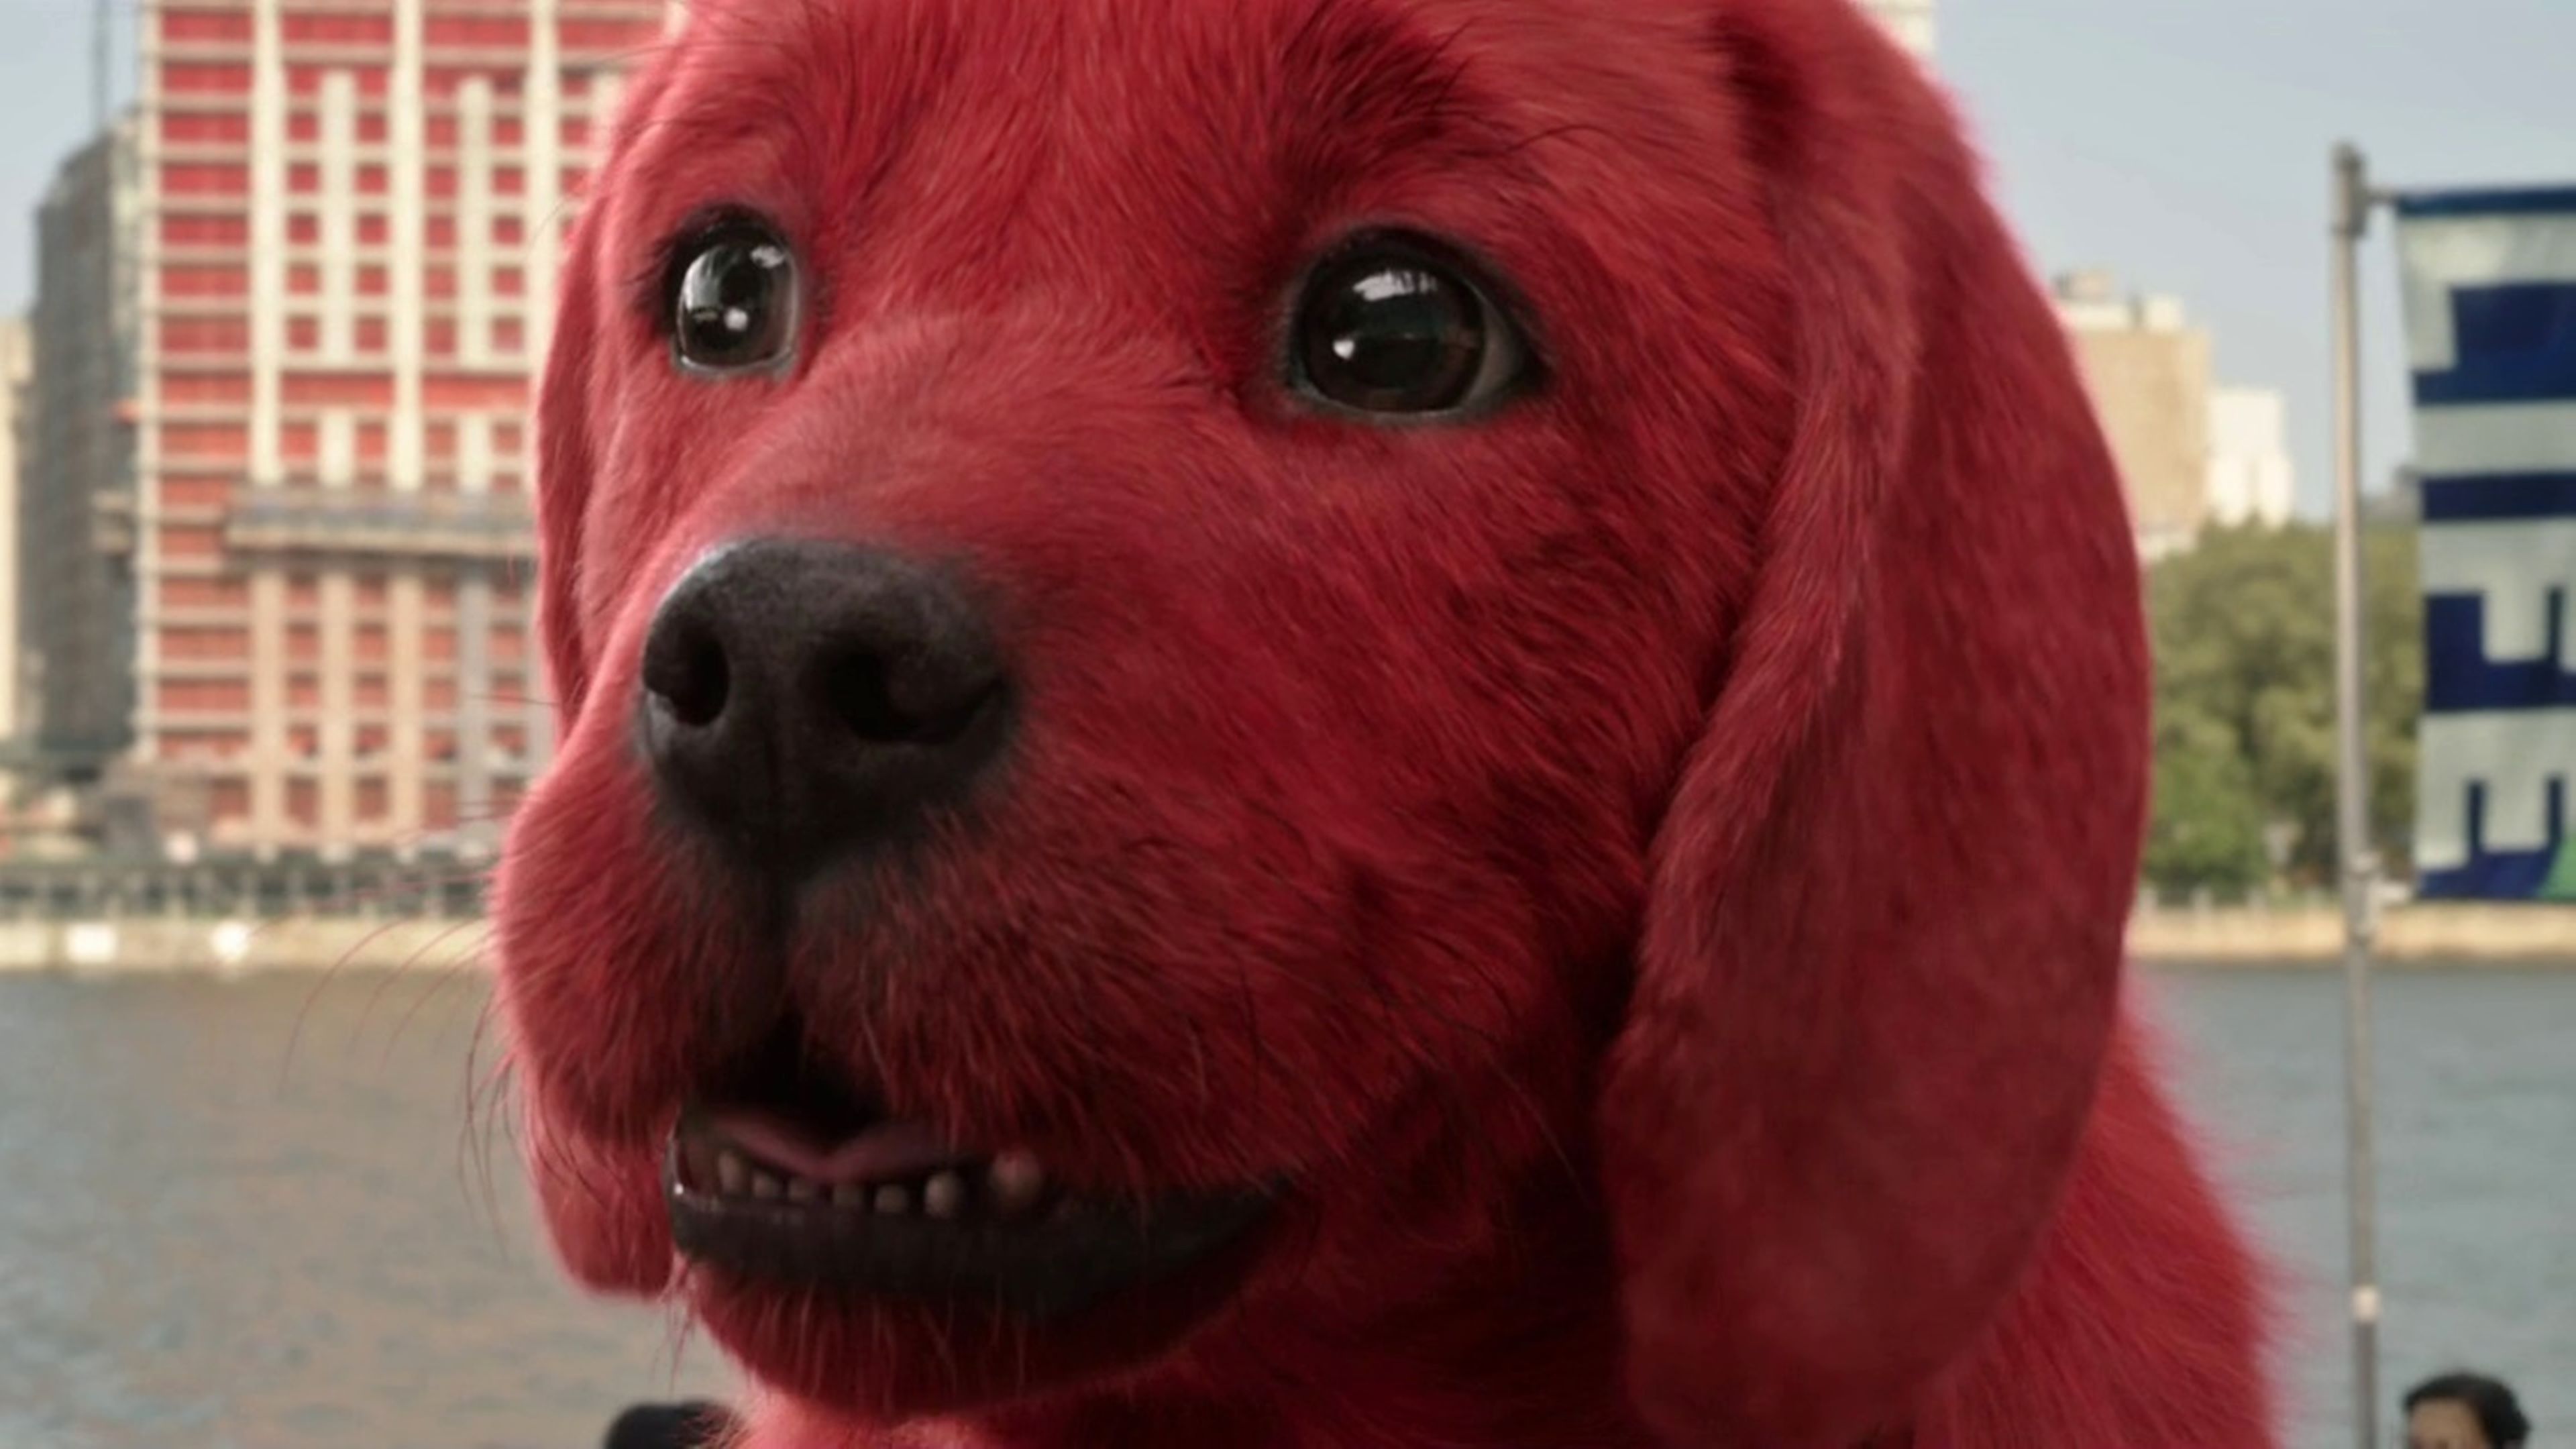 Clifford el gran perro rojo